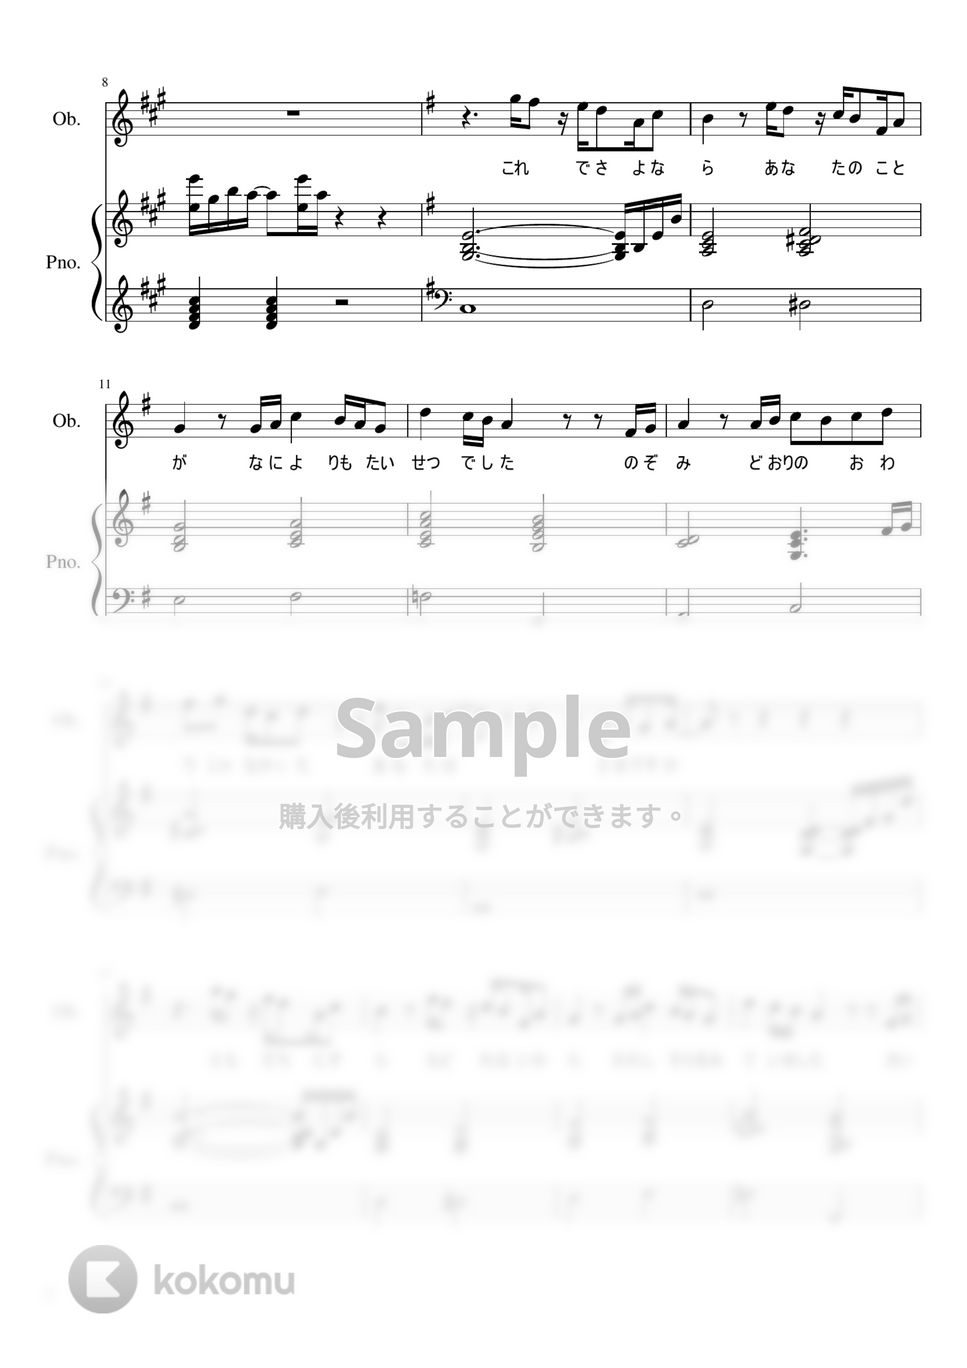 米津玄師 - Pale Blue (歌詞1番のみ) by 採譜